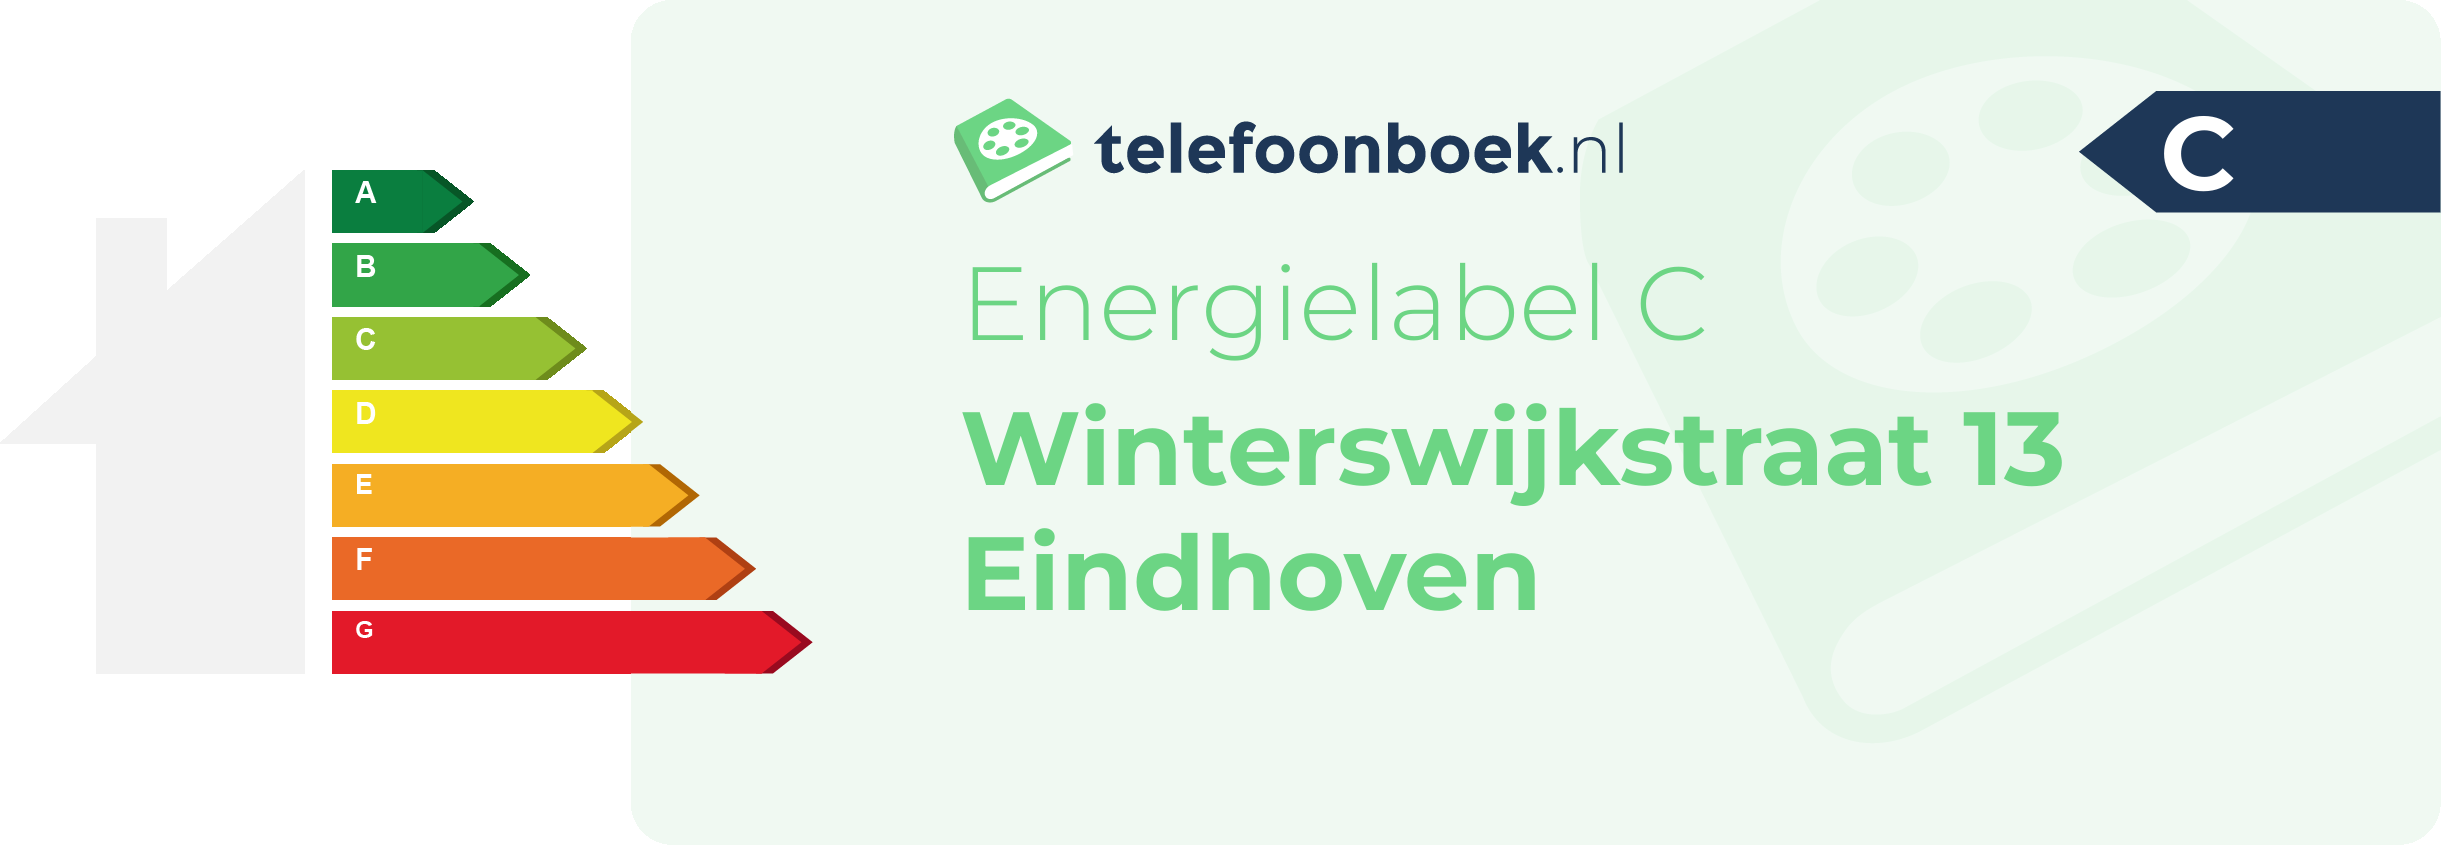 Energielabel Winterswijkstraat 13 Eindhoven